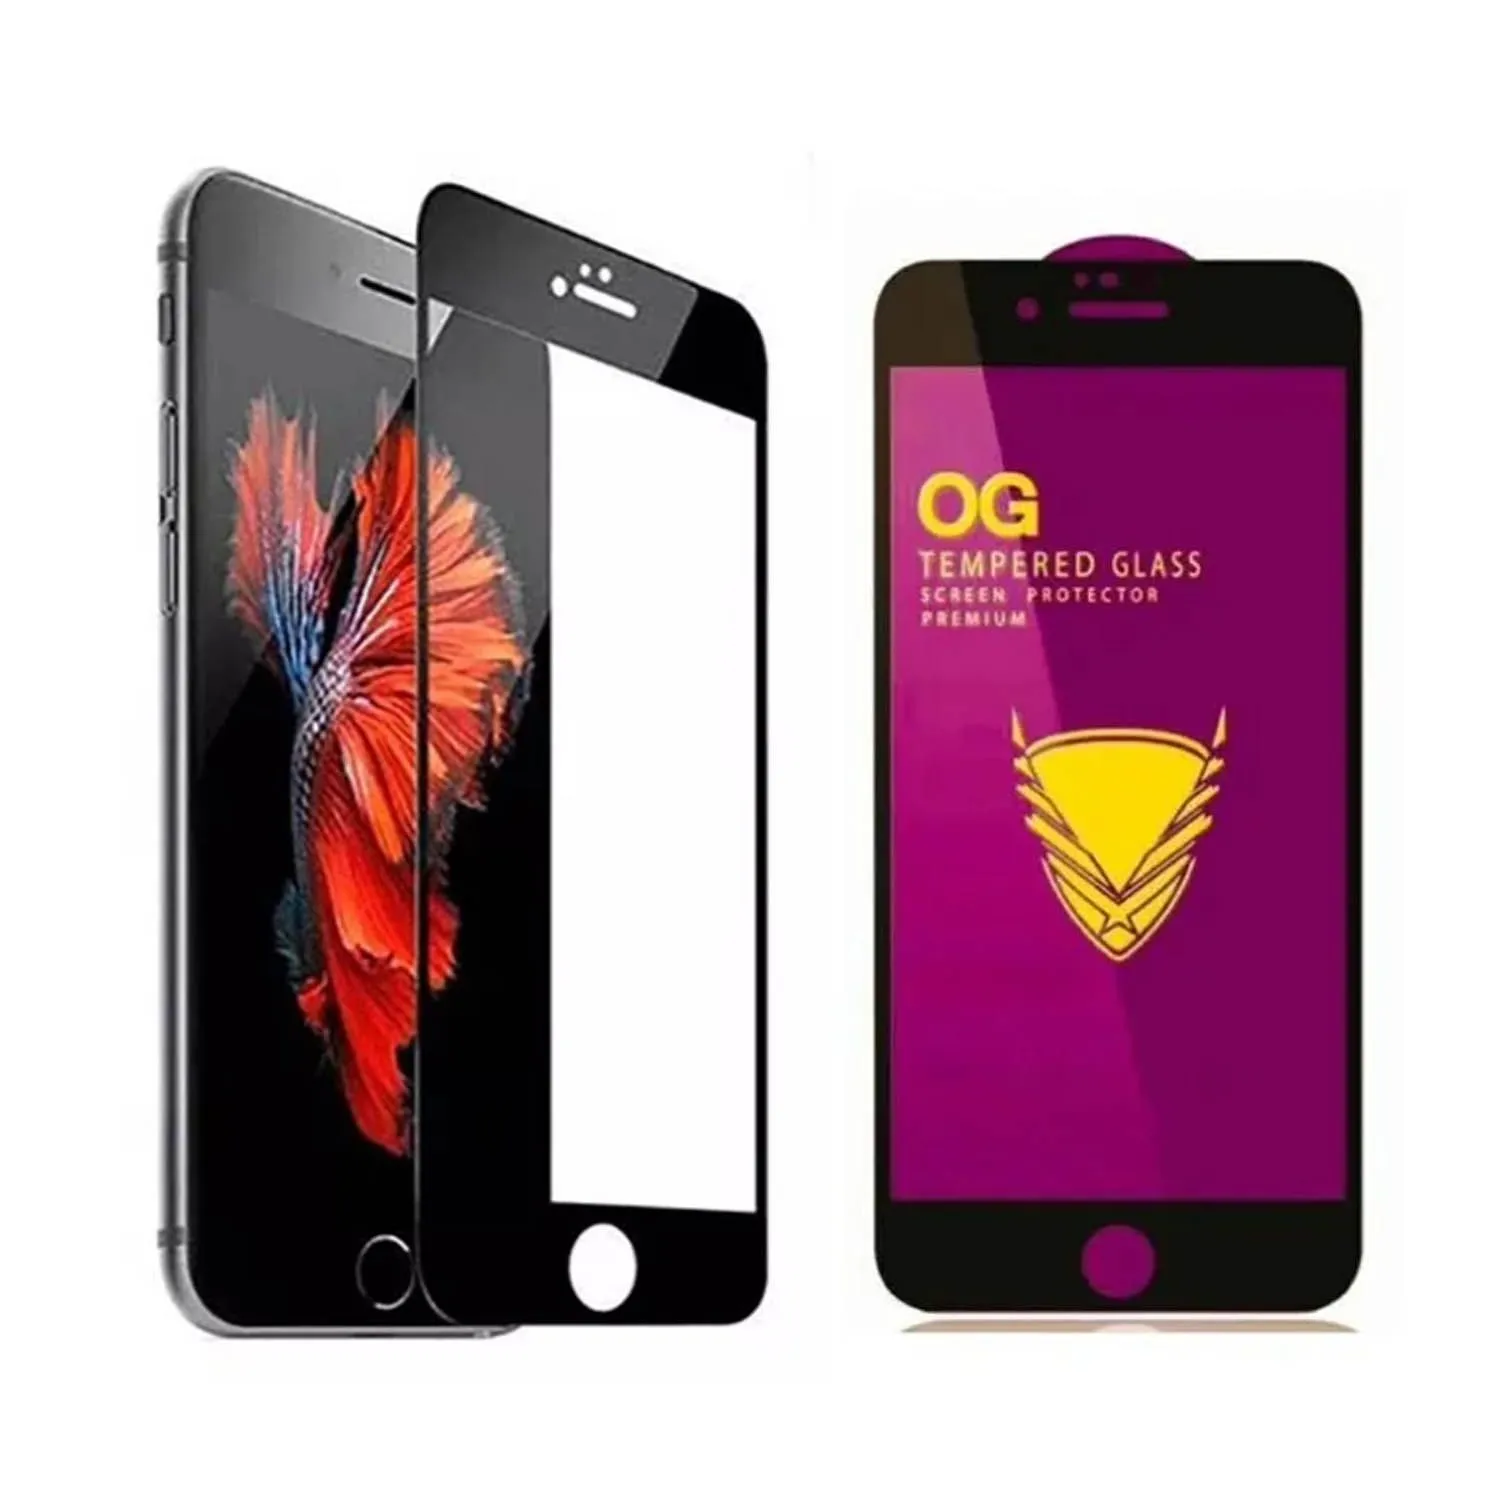 Противоударное стекло OG Tempered Glass Apple iPhone 6 Plus, 6S Plus (черный)